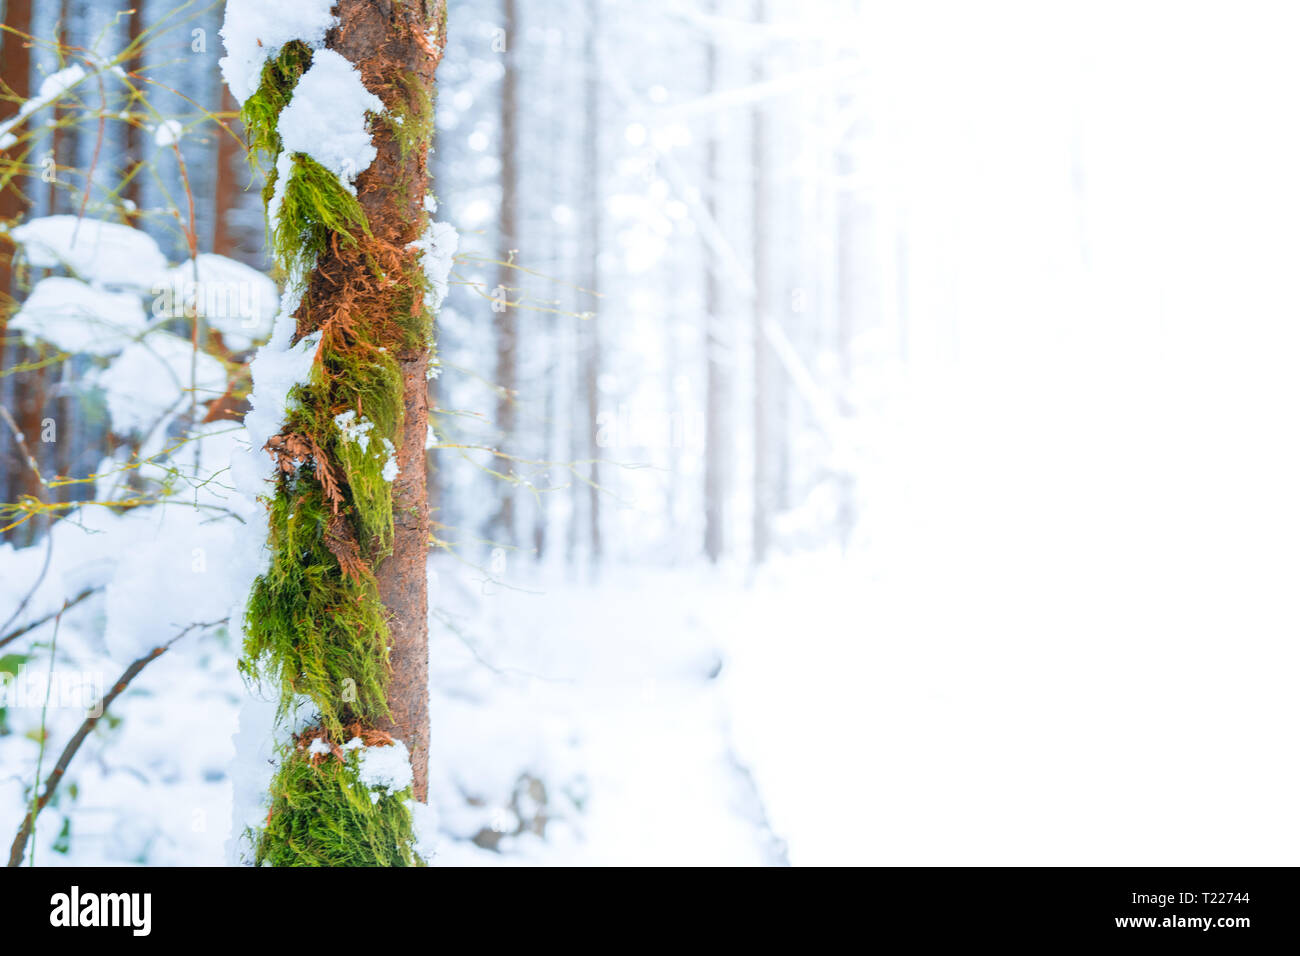 Braun und Grün bemoosten Baumstamm vorne, mit schnee, winter Szene zu verblassen zu weiß zu geben Raum für Text (Kopie Raum, Werbefläche oder Hintergrund). Stockfoto